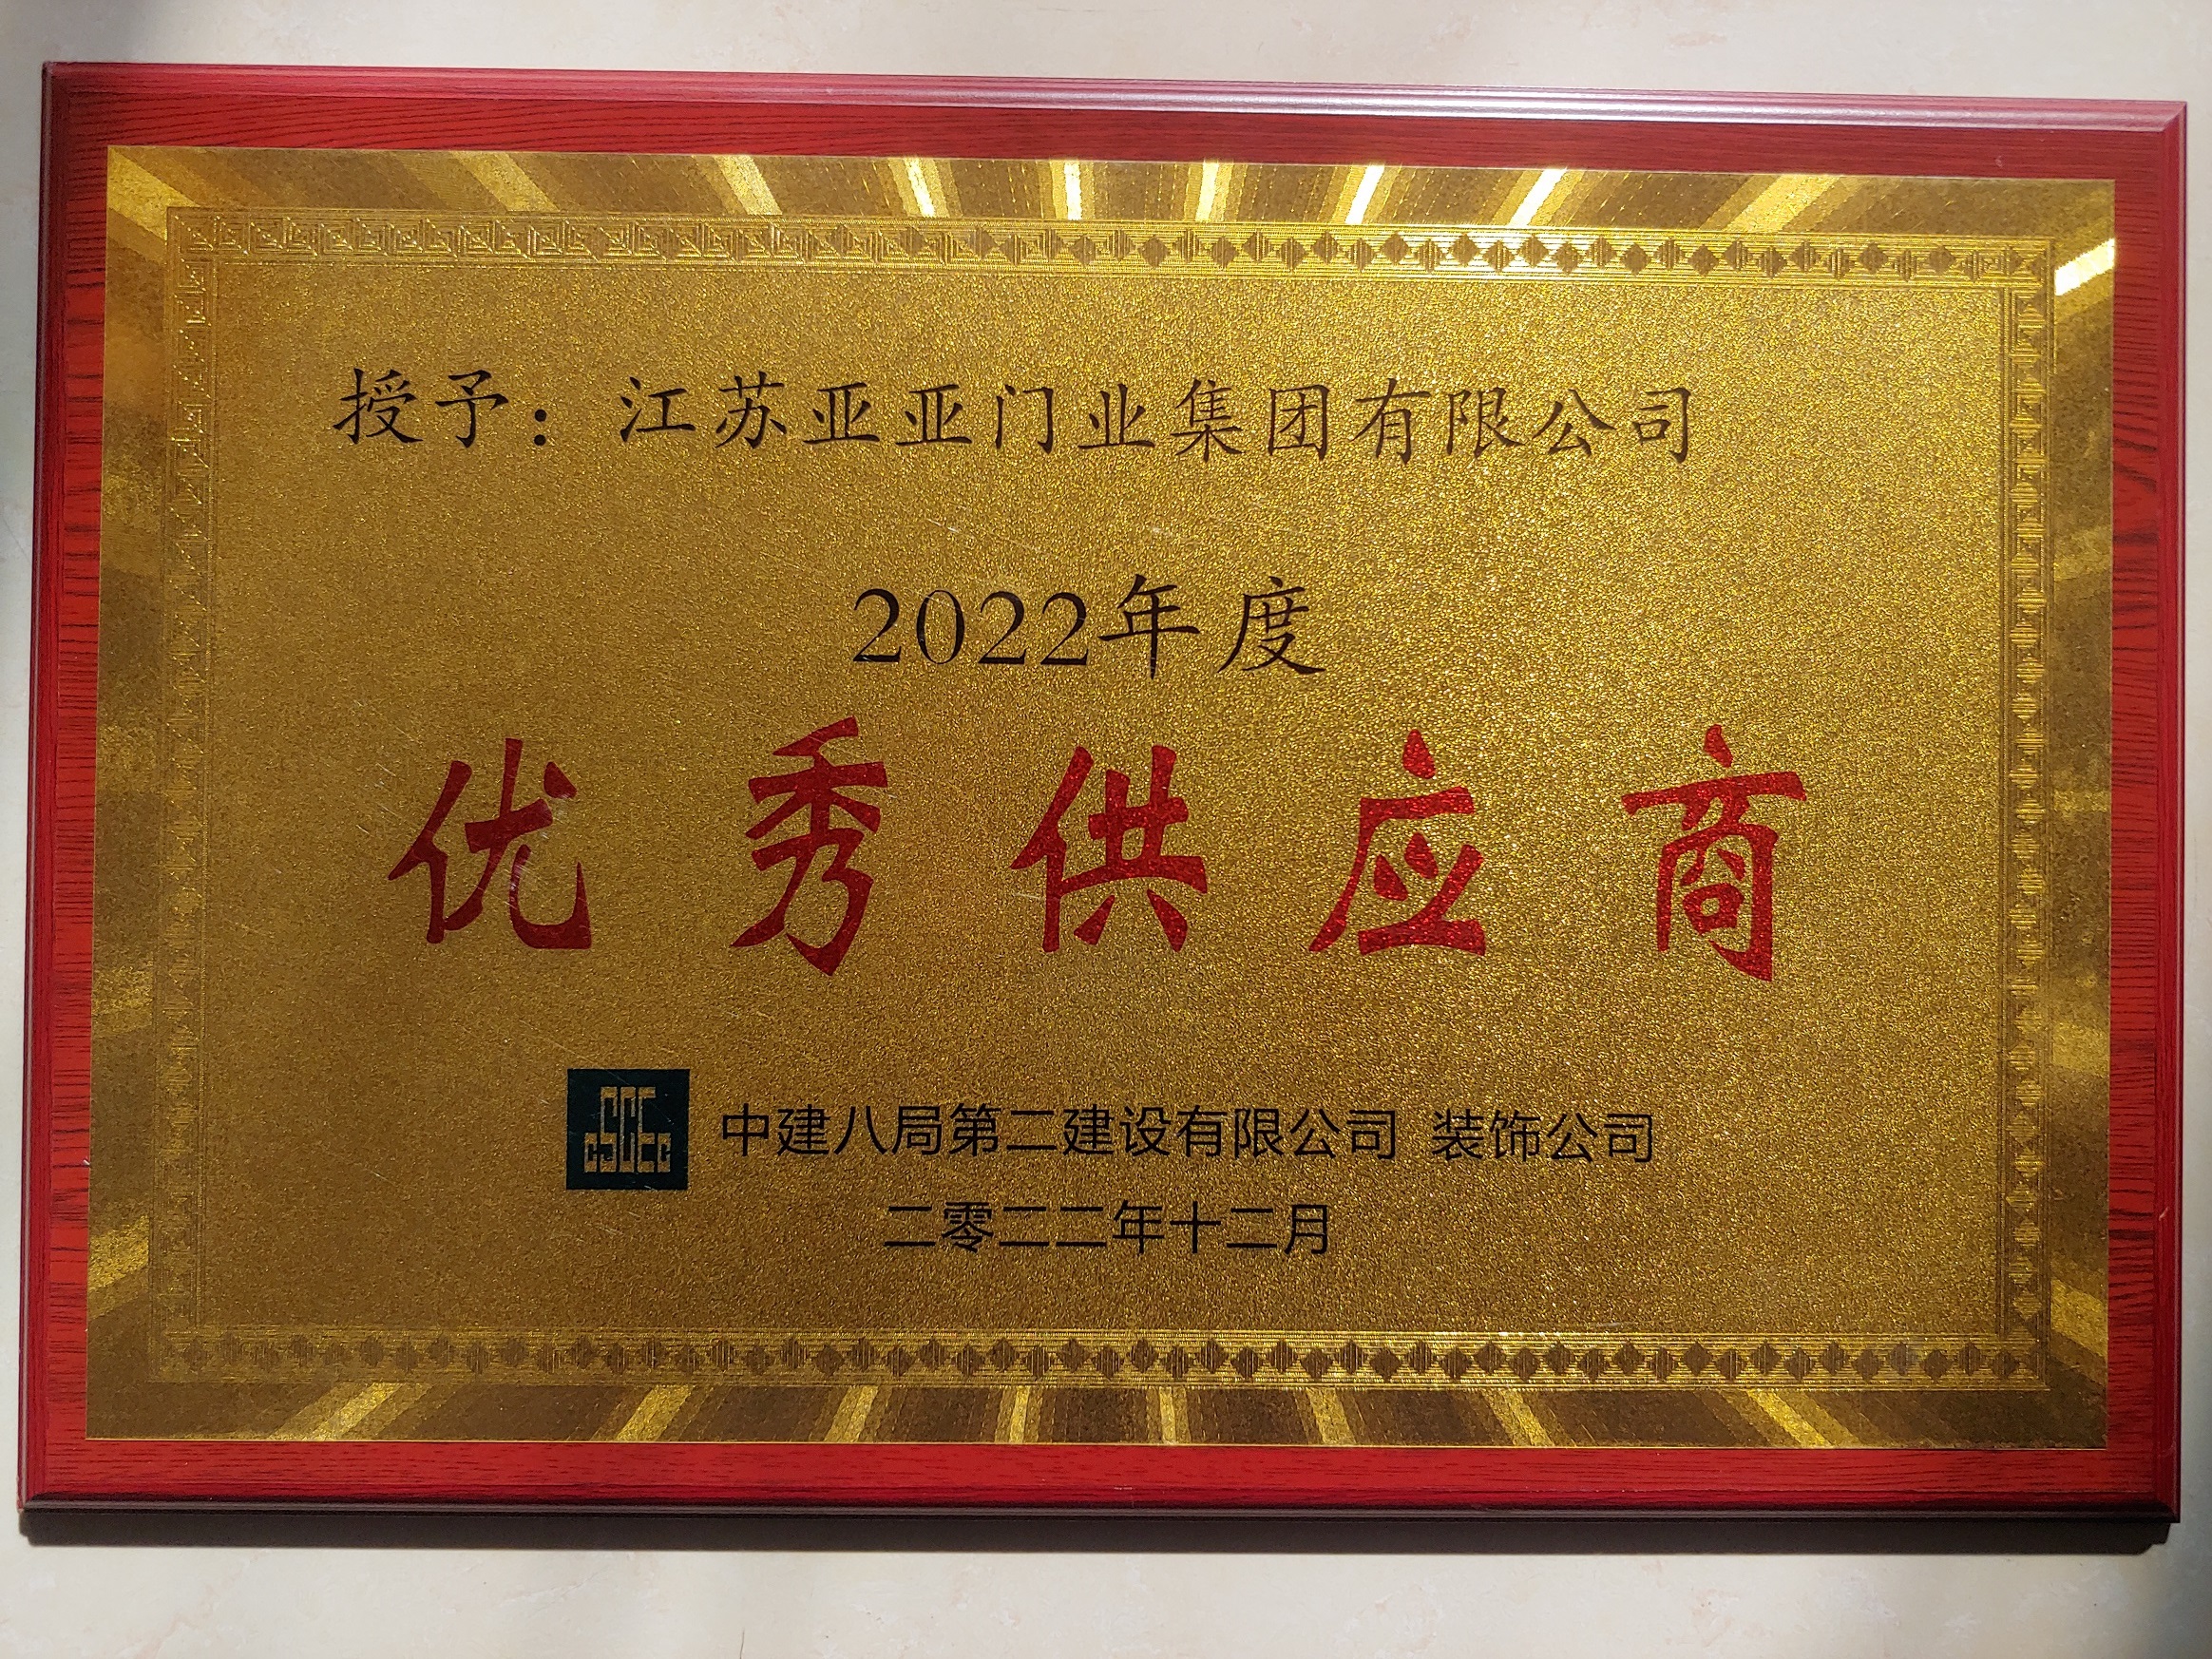 2022年度授予江蘇亞亞門業集團有限公司“優秀供應商”